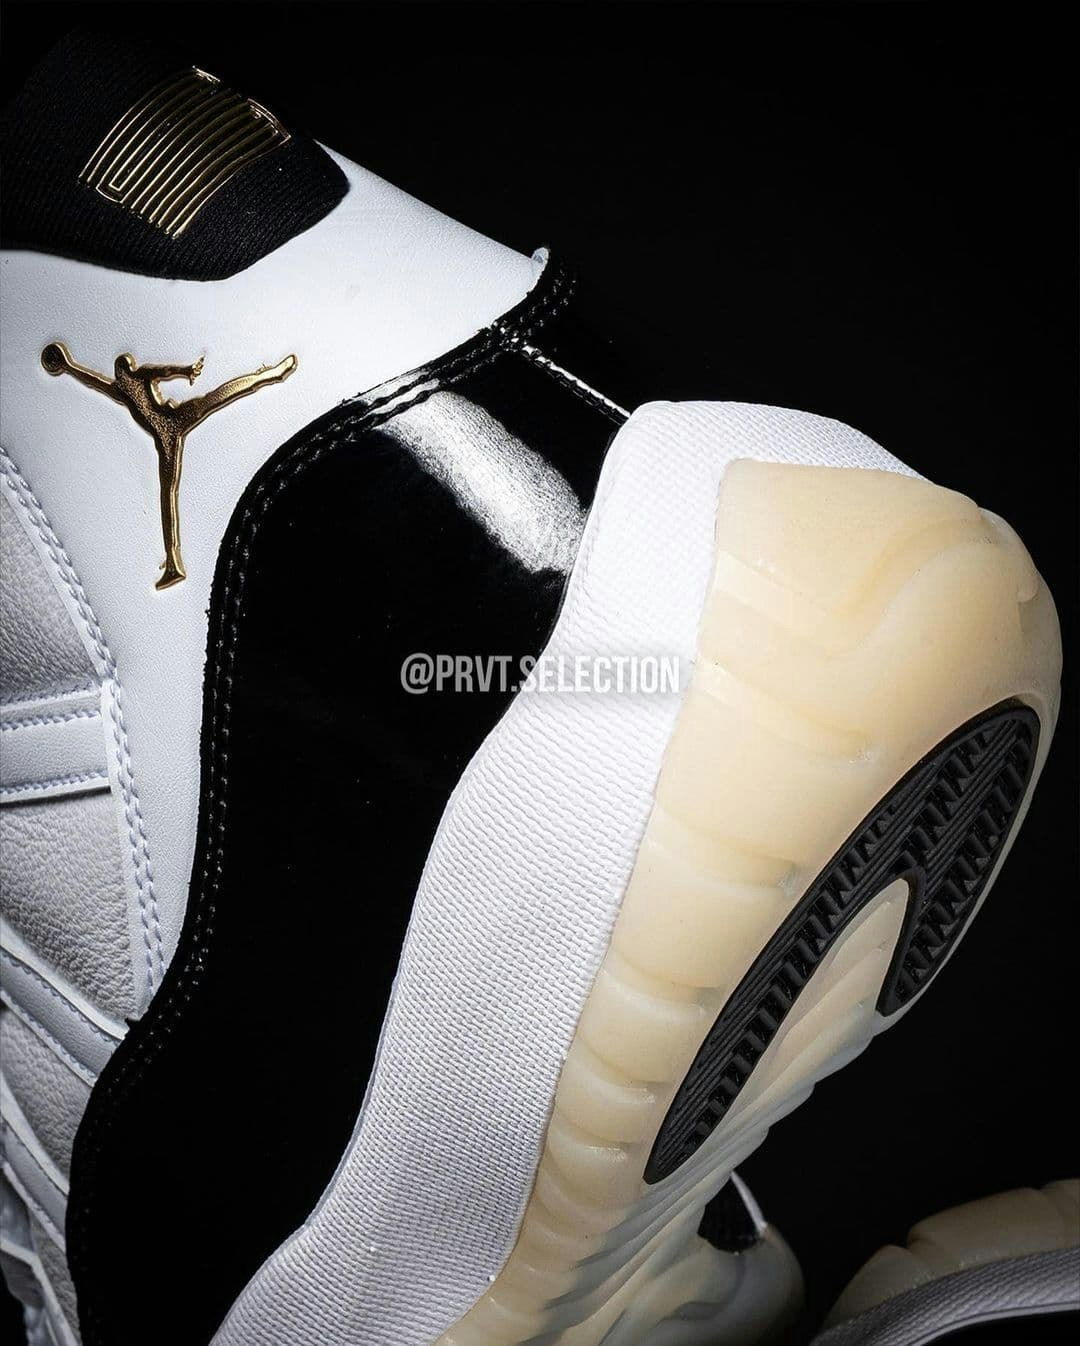 Nike Air Jordan 11 "DMP" (Defining Moment)